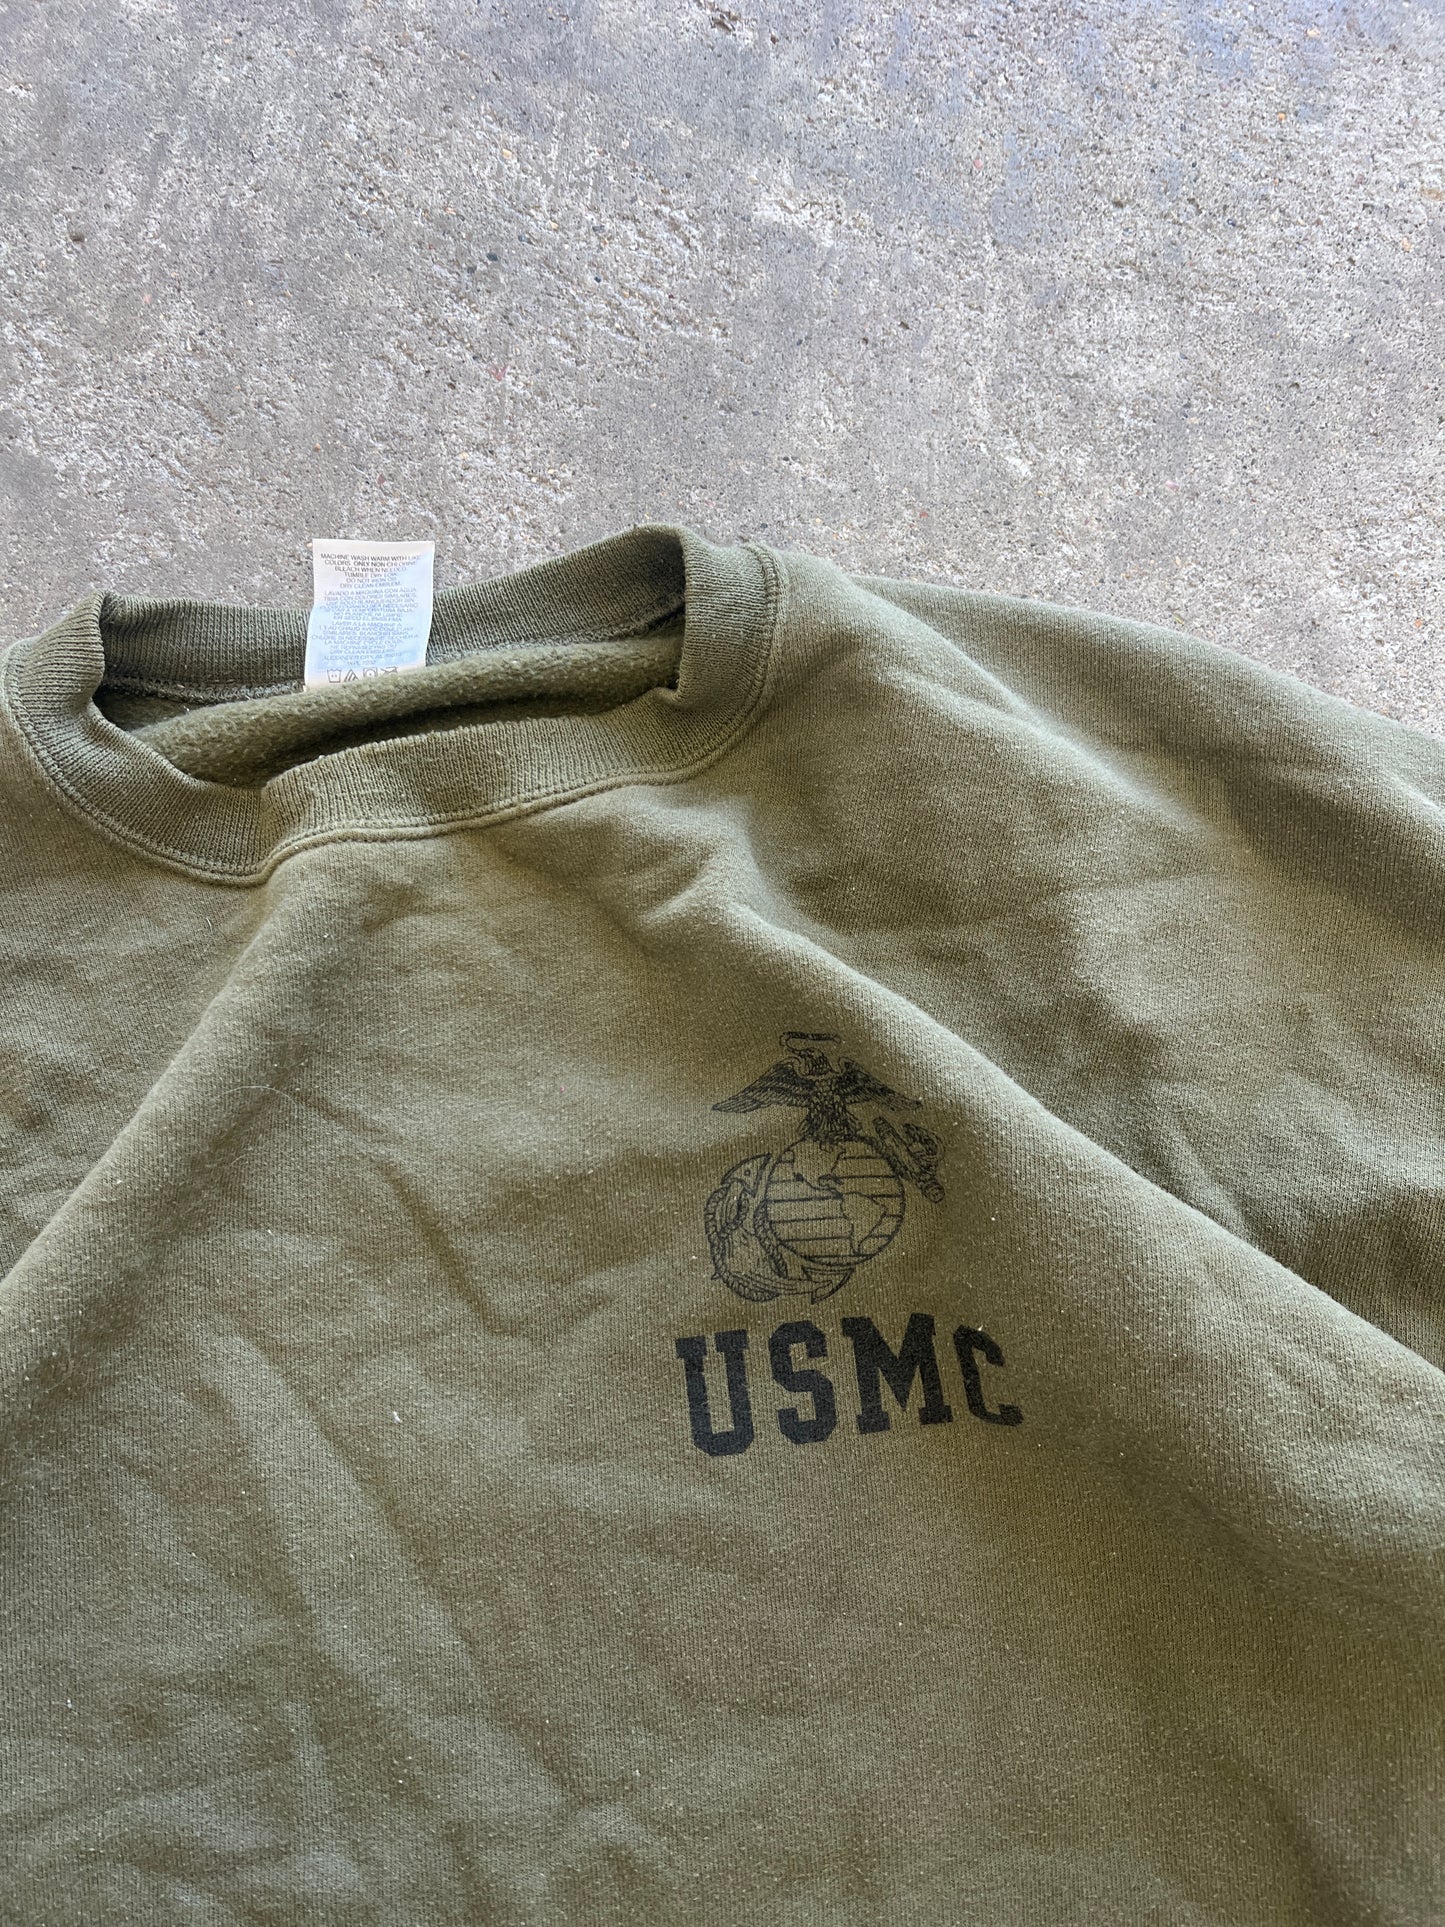 Vintage USMC Sweatshirt - L